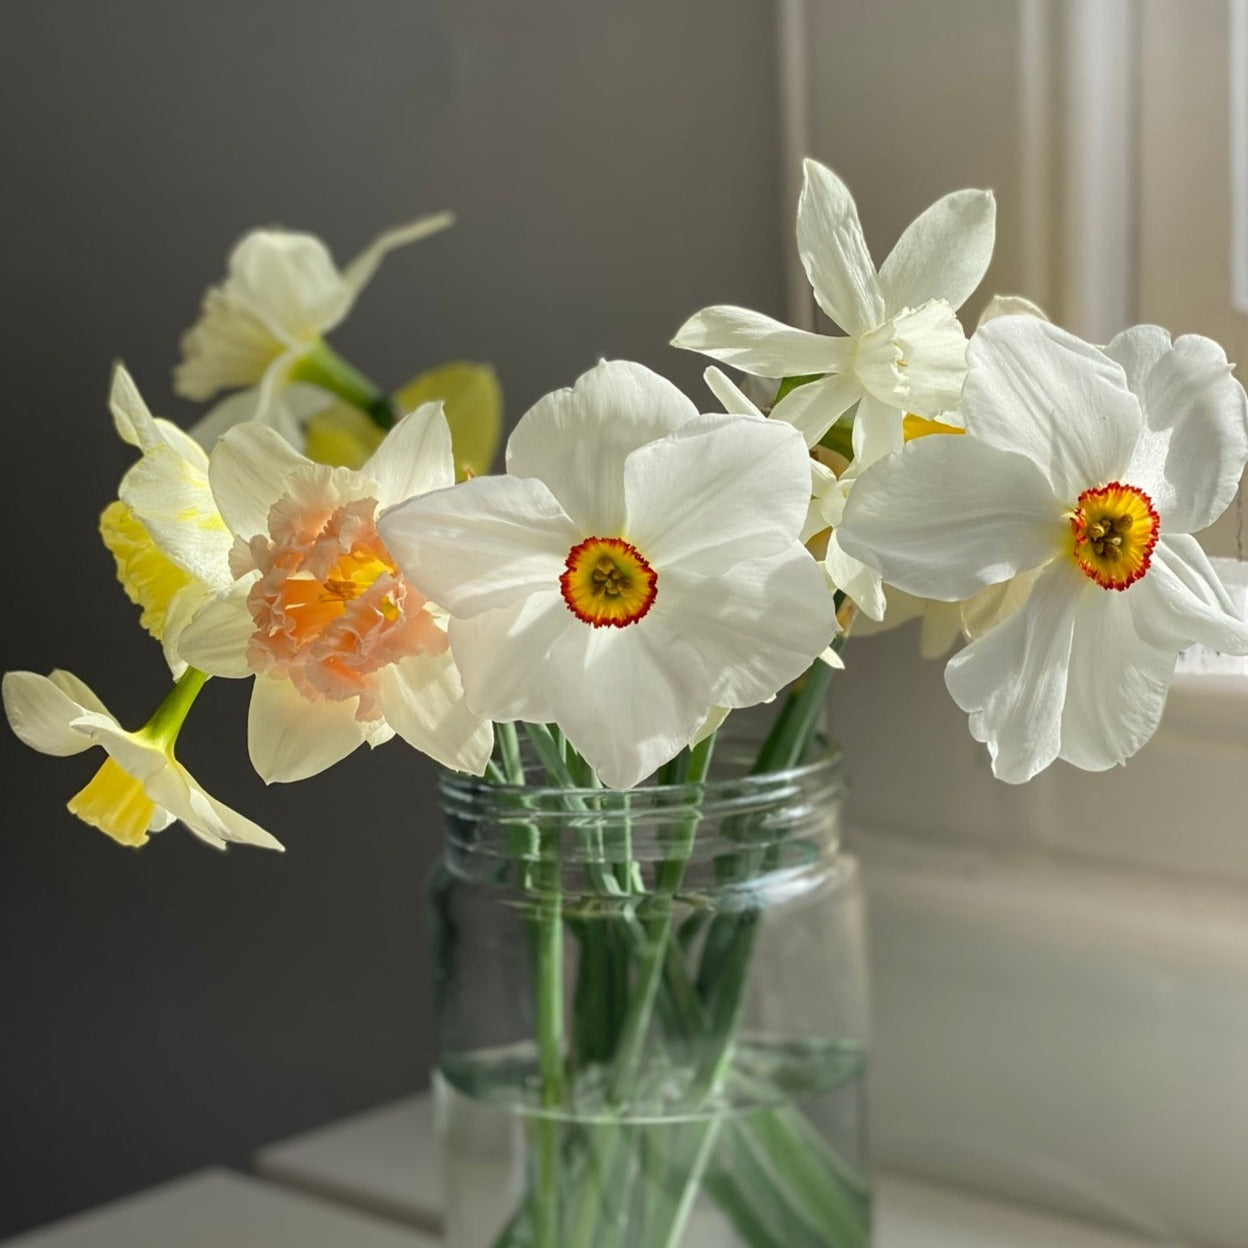 Daffodil Flower Stud Earrings - Joy - 9kt Gold